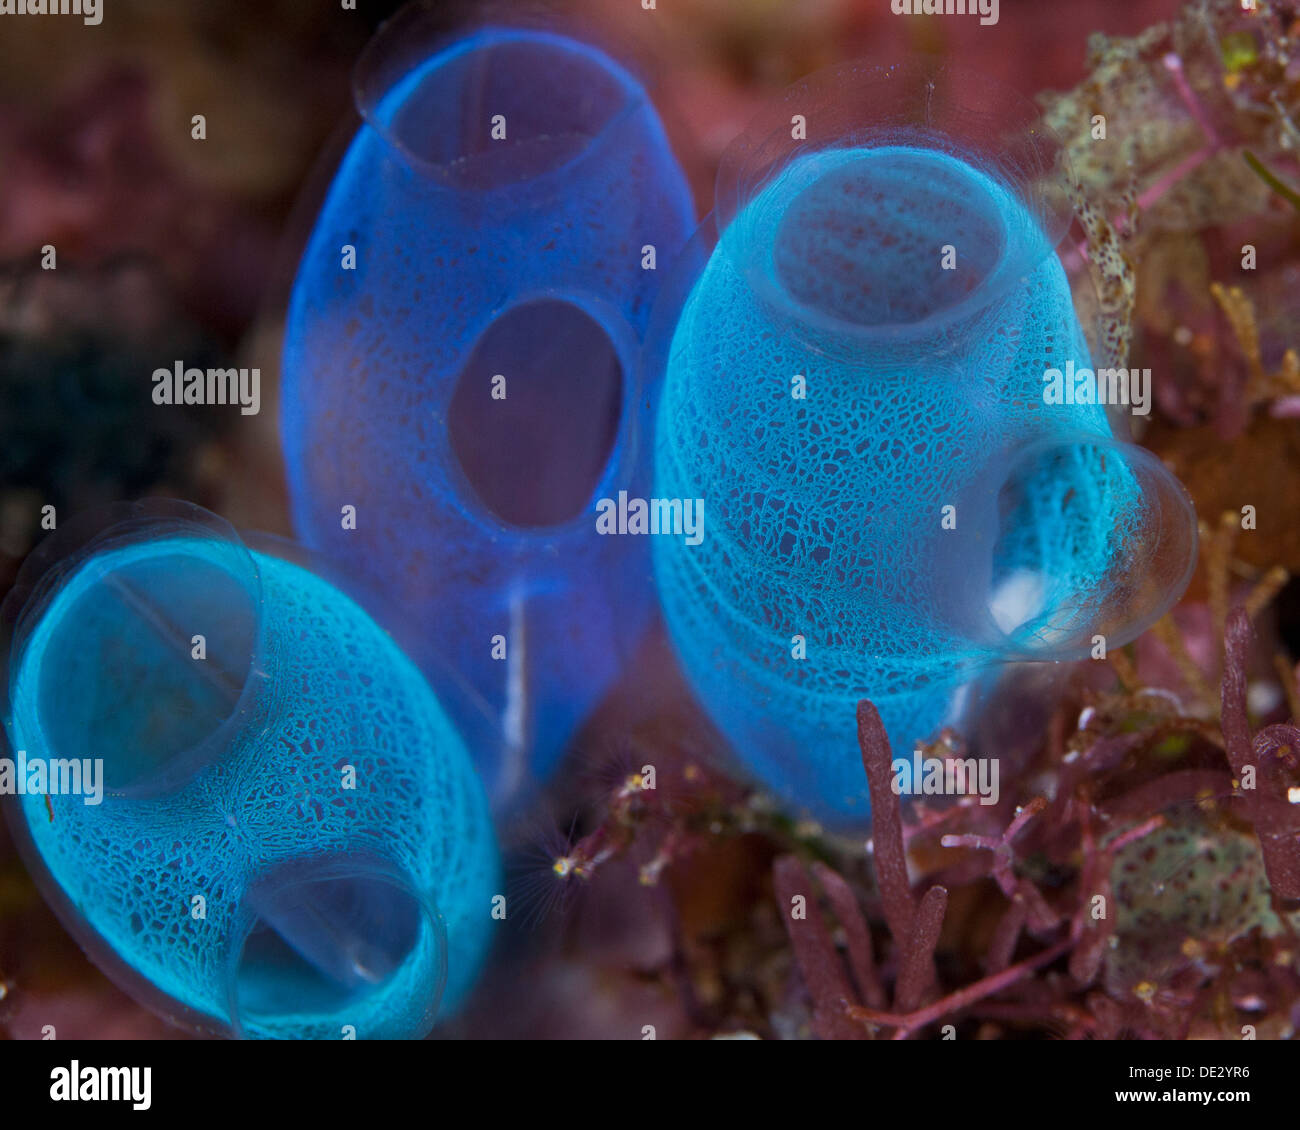 Close-up immagine di tre traslucide blu fluorescente tunicati rivelando delicata struttura interna. Bunaken Island, Indonesia. Foto Stock